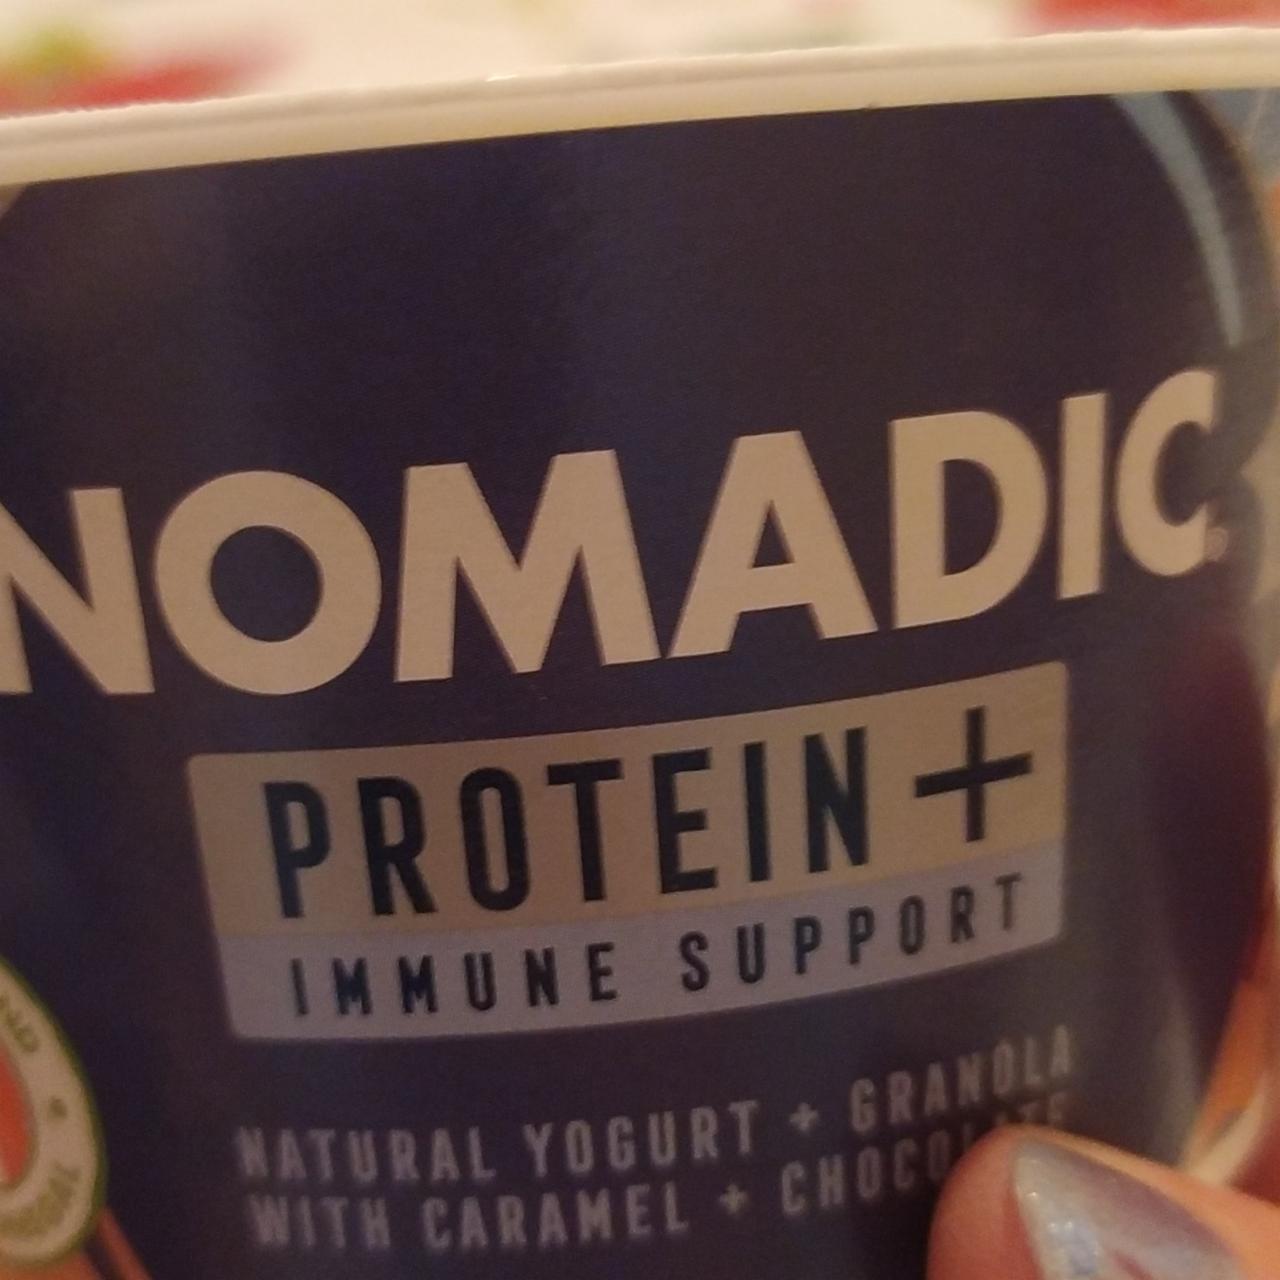 Fotografie - Protein + Immune support Nomadic